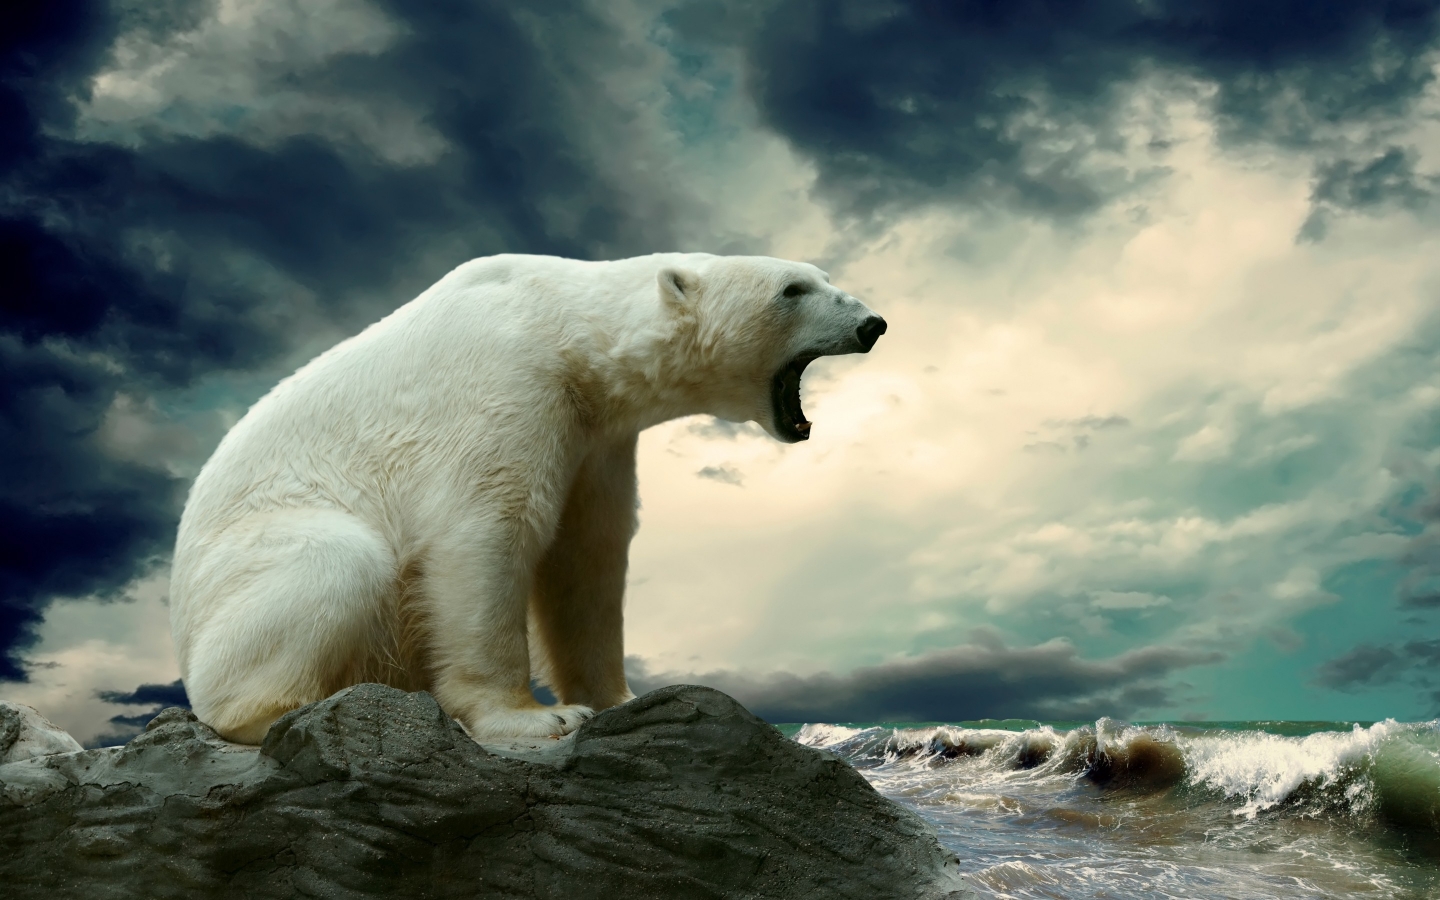 Polar Bear Shouting for 1440 x 900 widescreen resolution